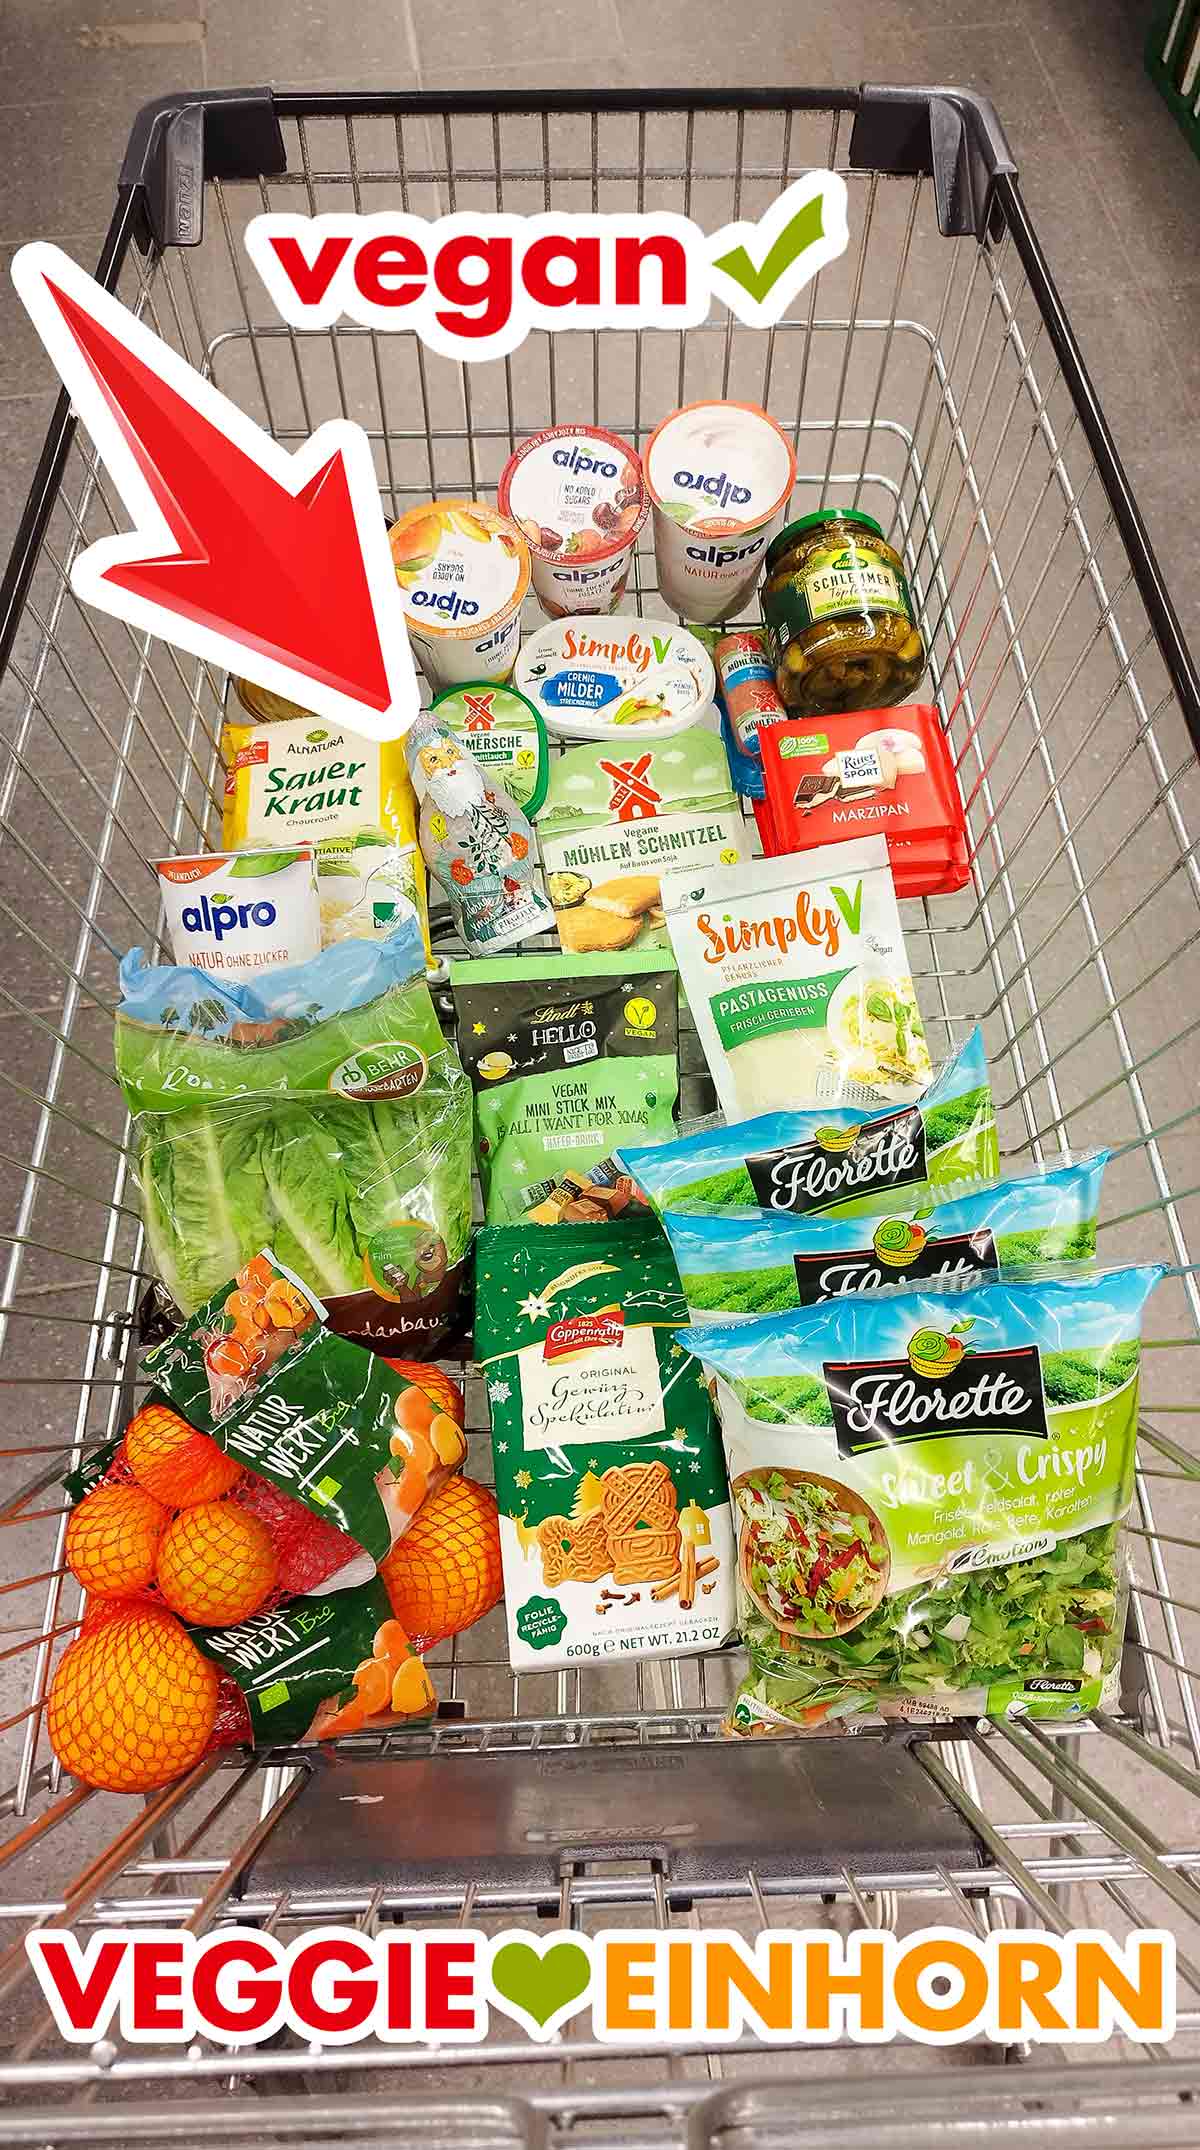 Einkaufswagen mit veganen Lebensmitteln und dem veganen Riegelein Weihnachtsmann